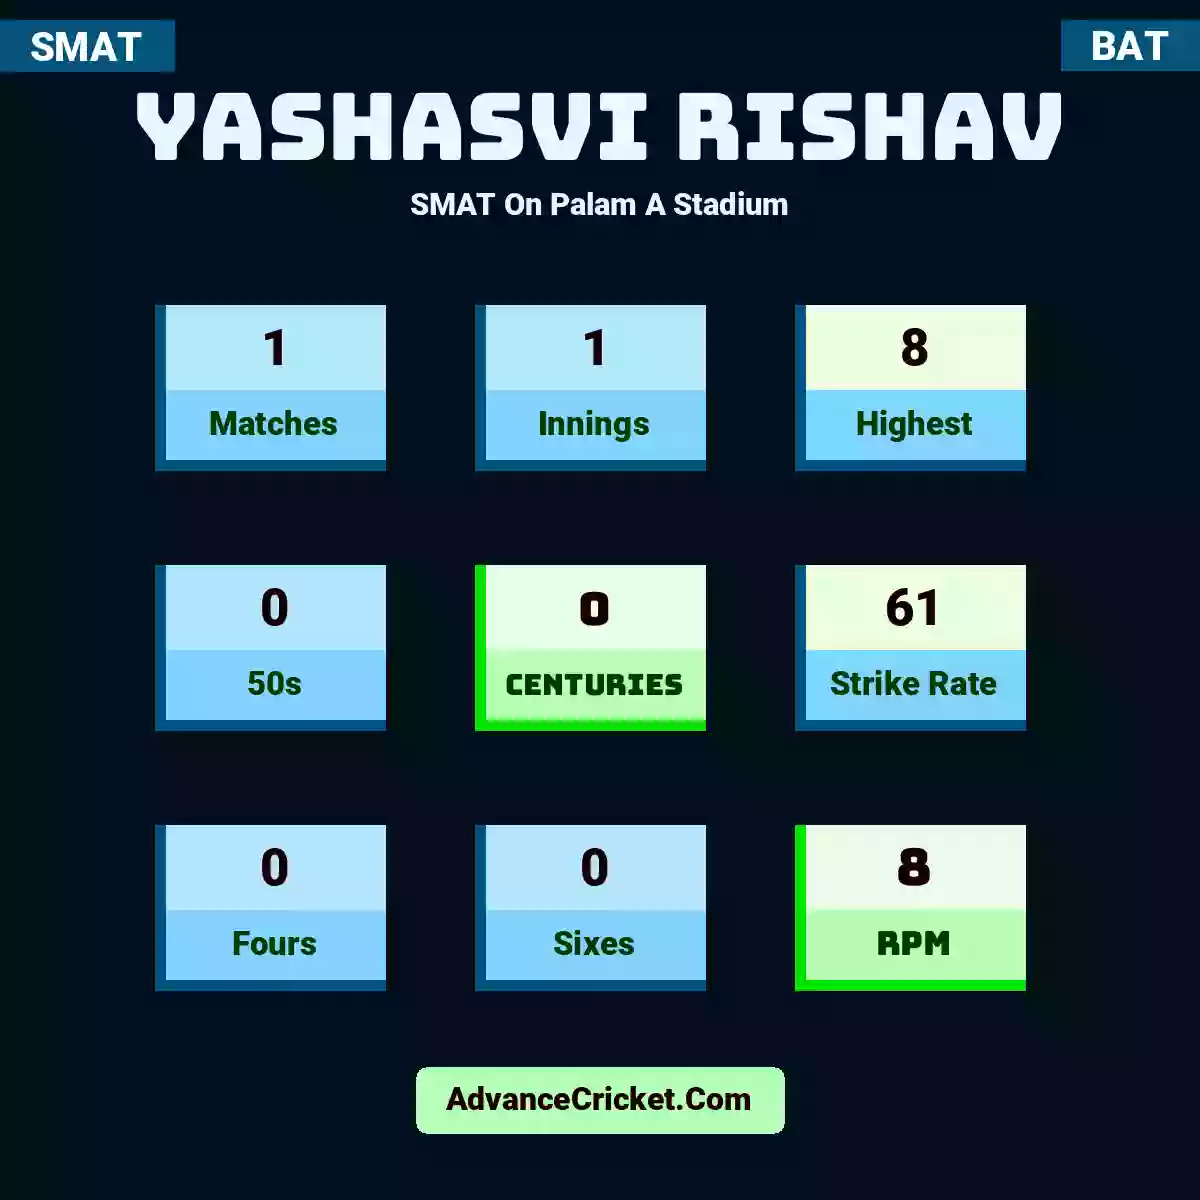 Yashasvi Rishav SMAT  On Palam A Stadium, Yashasvi Rishav played 1 matches, scored 8 runs as highest, 0 half-centuries, and 0 centuries, with a strike rate of 61. Yashasvi.Rishav hit 0 fours and 0 sixes, with an RPM of 8.